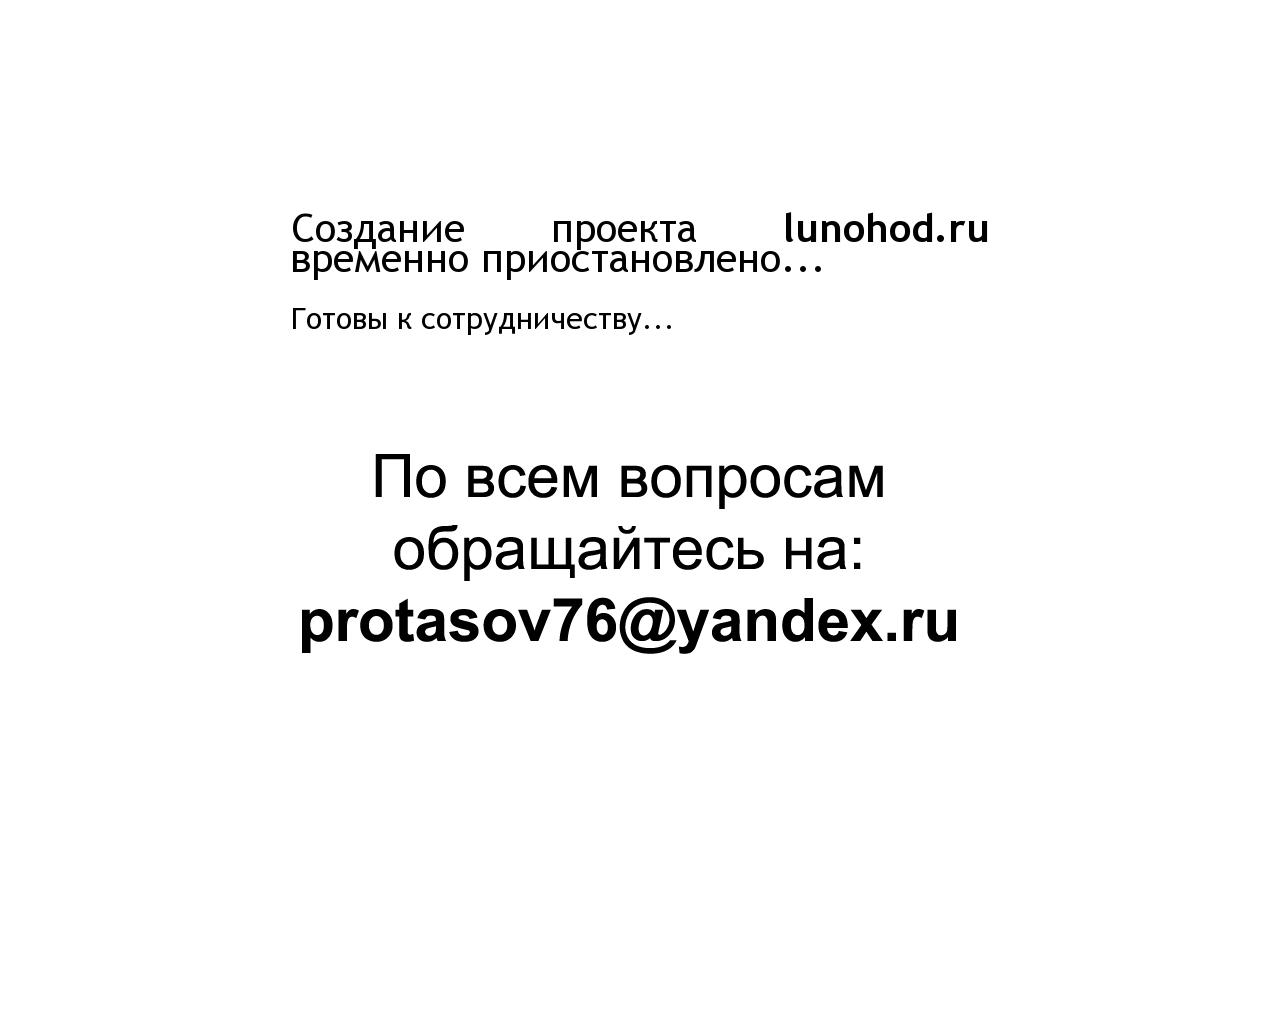 Изображение сайта lunohod.ru в разрешении 1280x1024